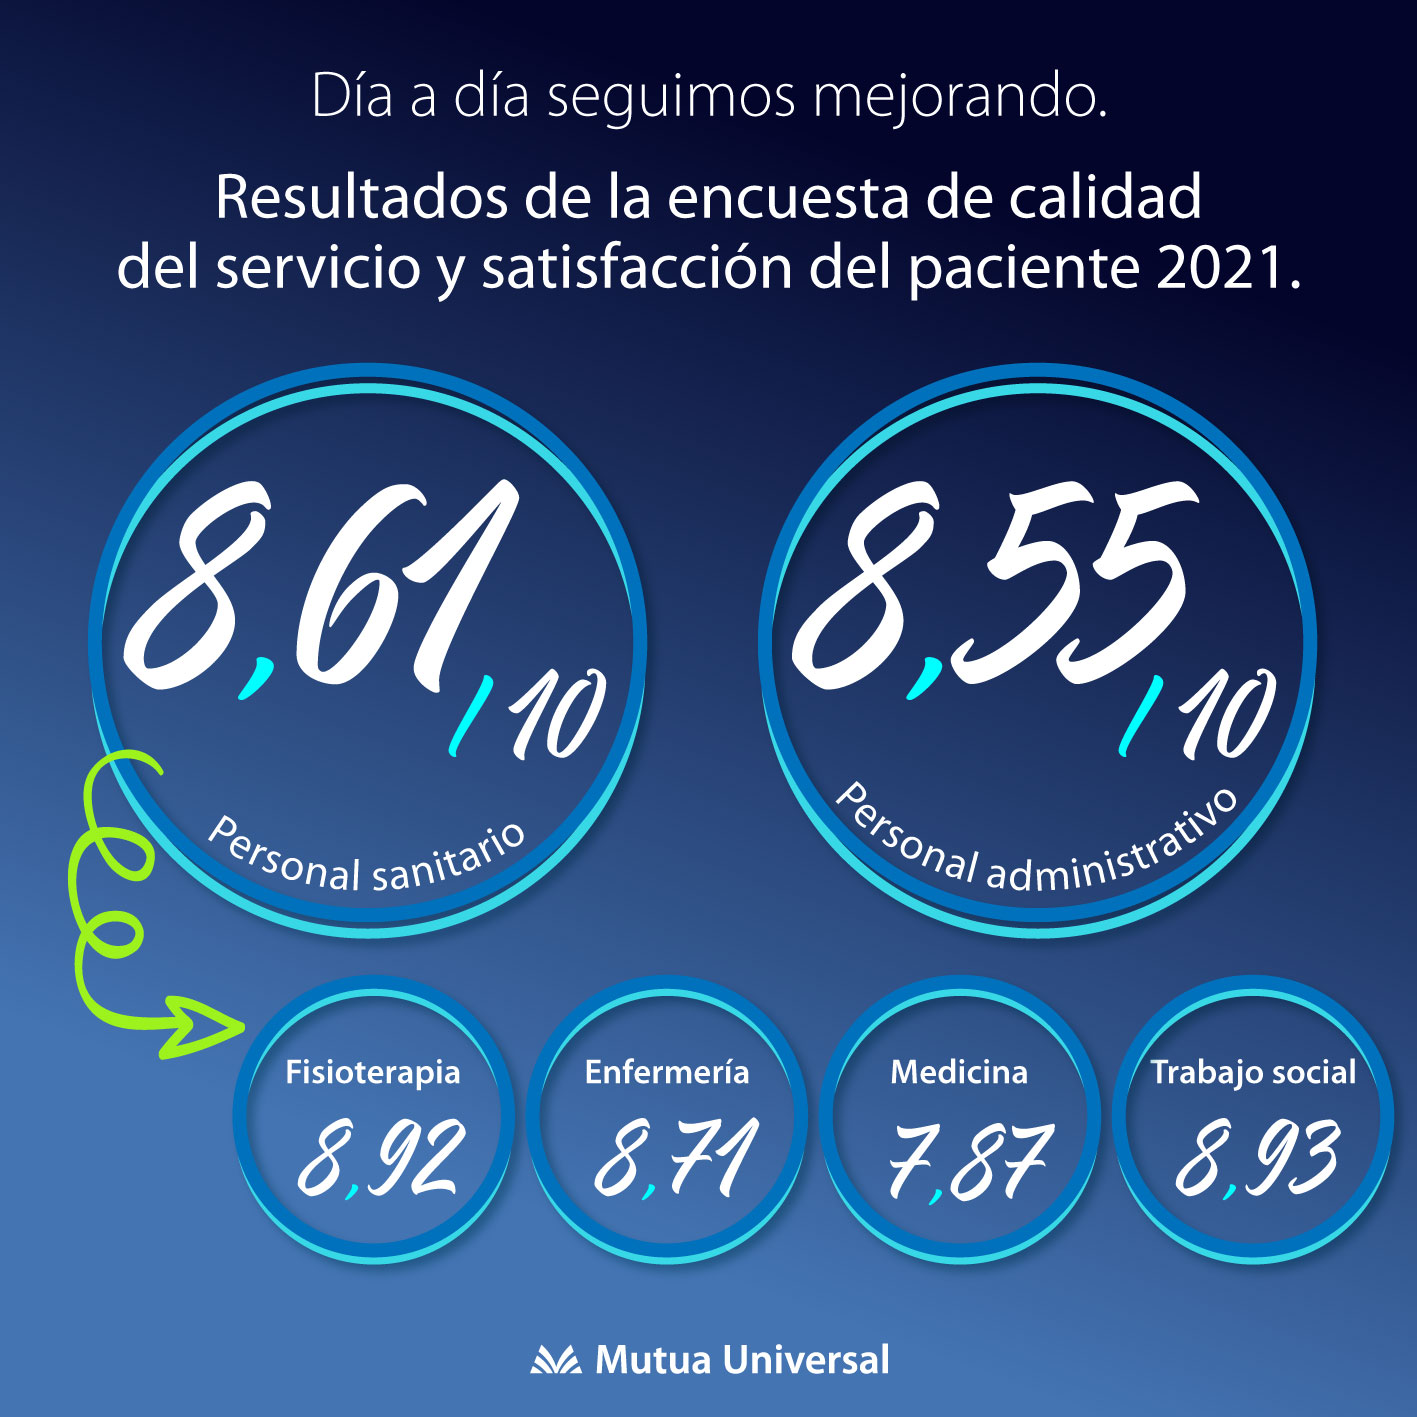 O noso persoal sanitario obtén un 8,61 na Enquisa de Satisfacción Paciente 2021